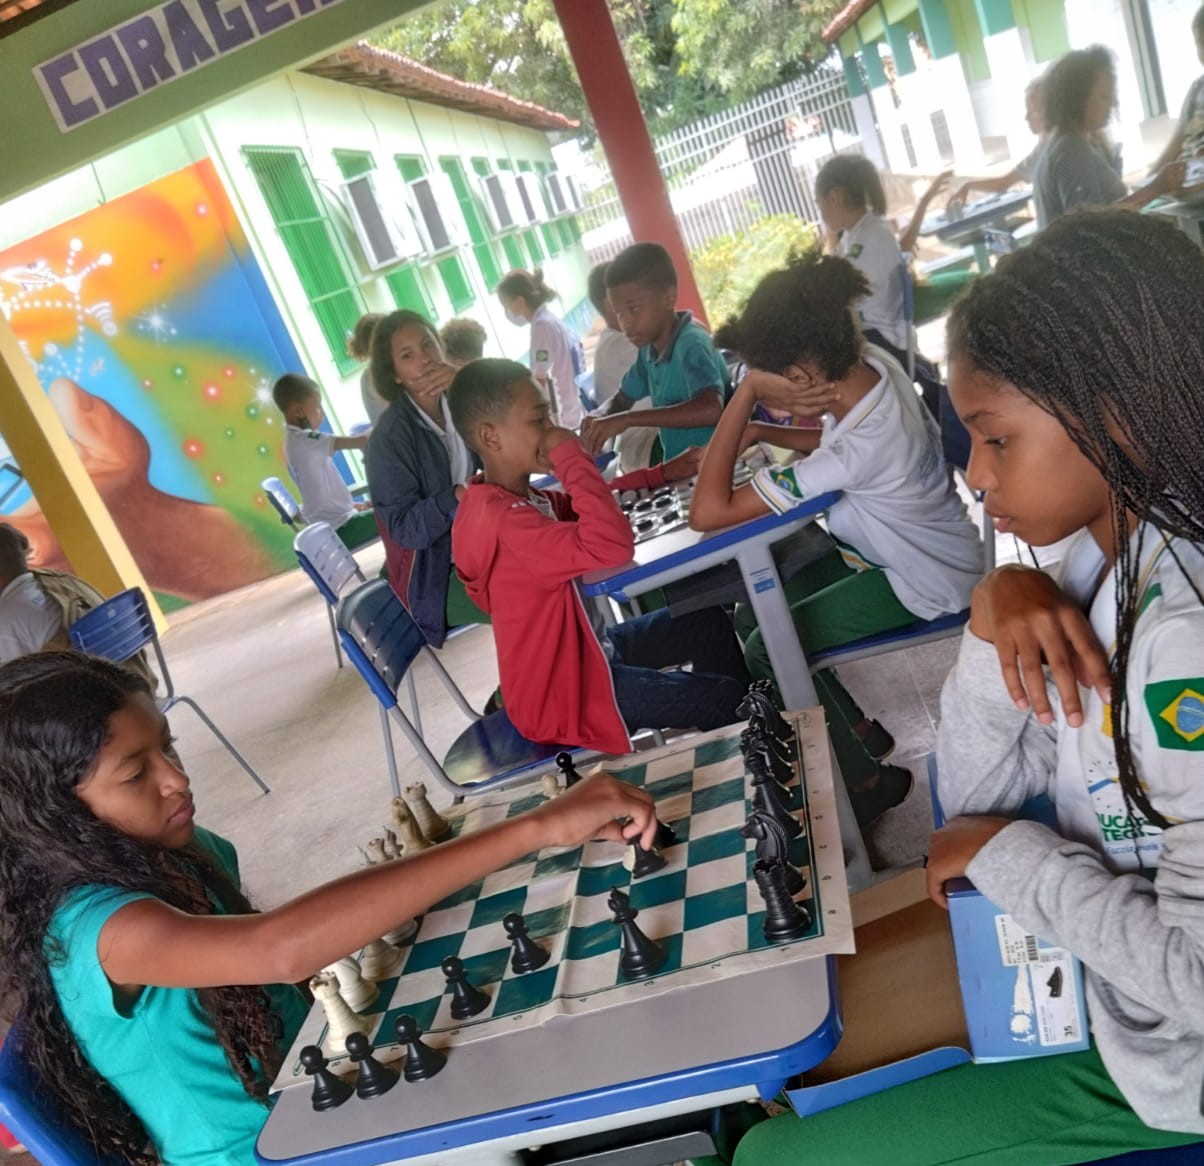 Jogo de xadrez vai além do entretenimento e do lúdico - Secretaria da  Educação do Estado de São Paulo